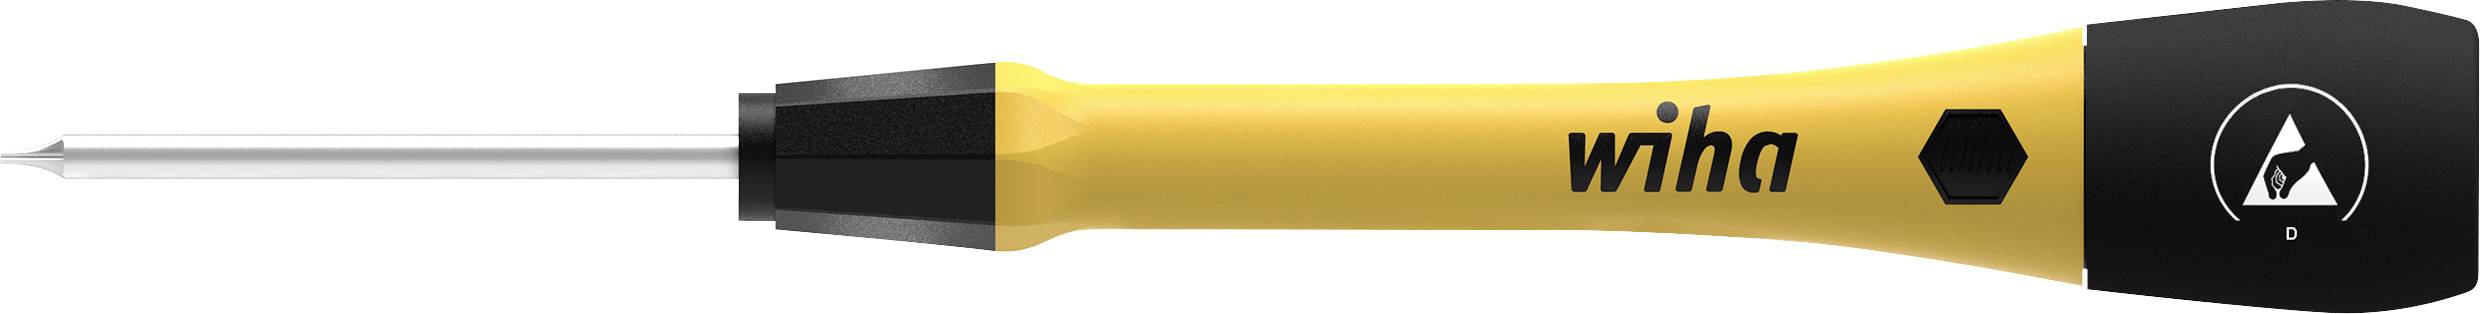 WIHA Elektriker Torx-Schraubendreher Größe (Schraubendreher) T 8 Klingenlänge: 40 mm (43701)